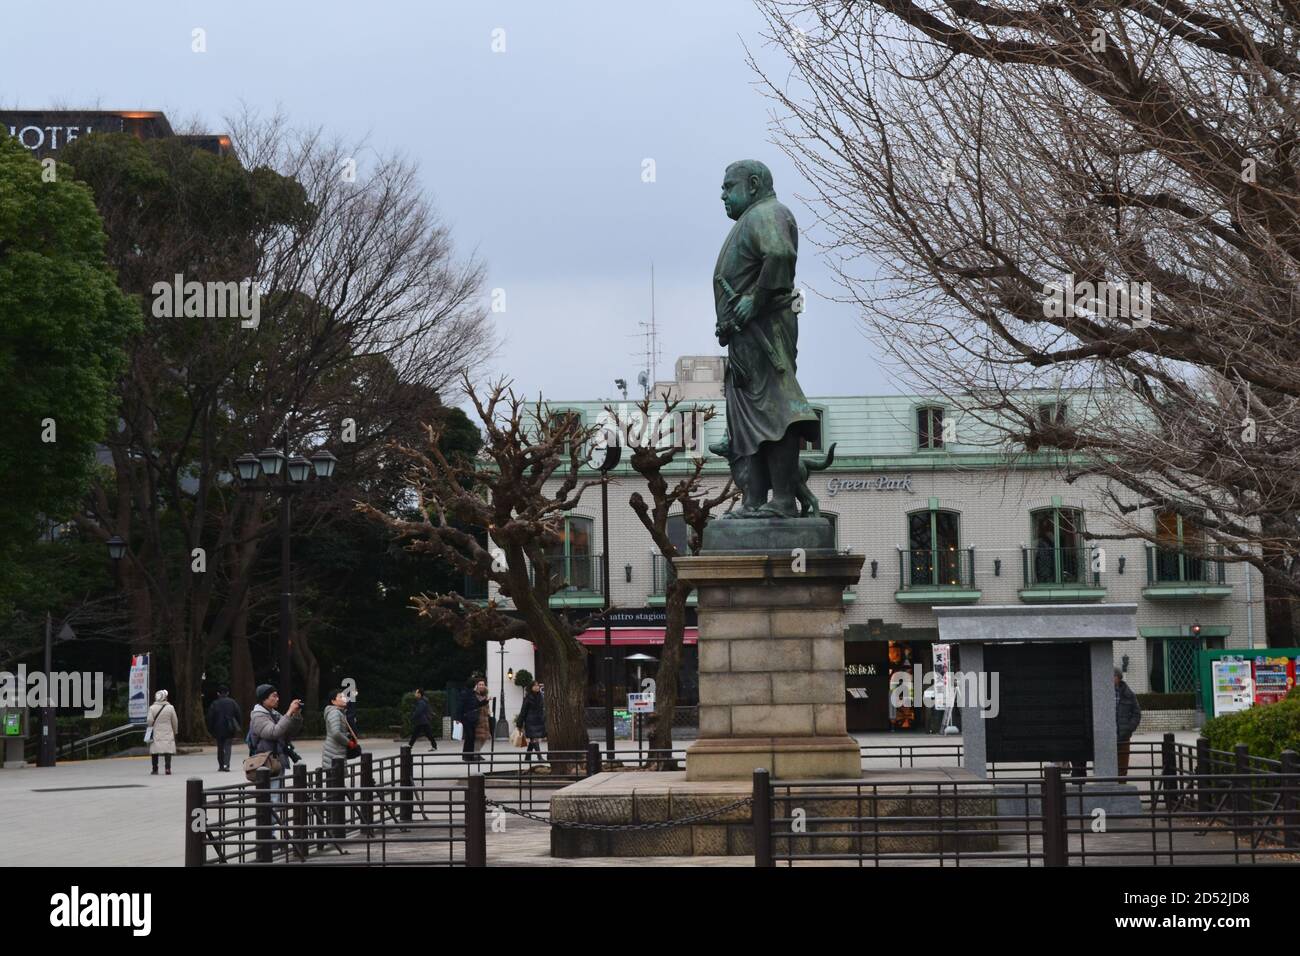 Tokio, Japón-2/23/16: Reunión de turistas y la toma de fotos de la estatua de Saigo Takamori situado en el Parque Ueno. Foto de stock